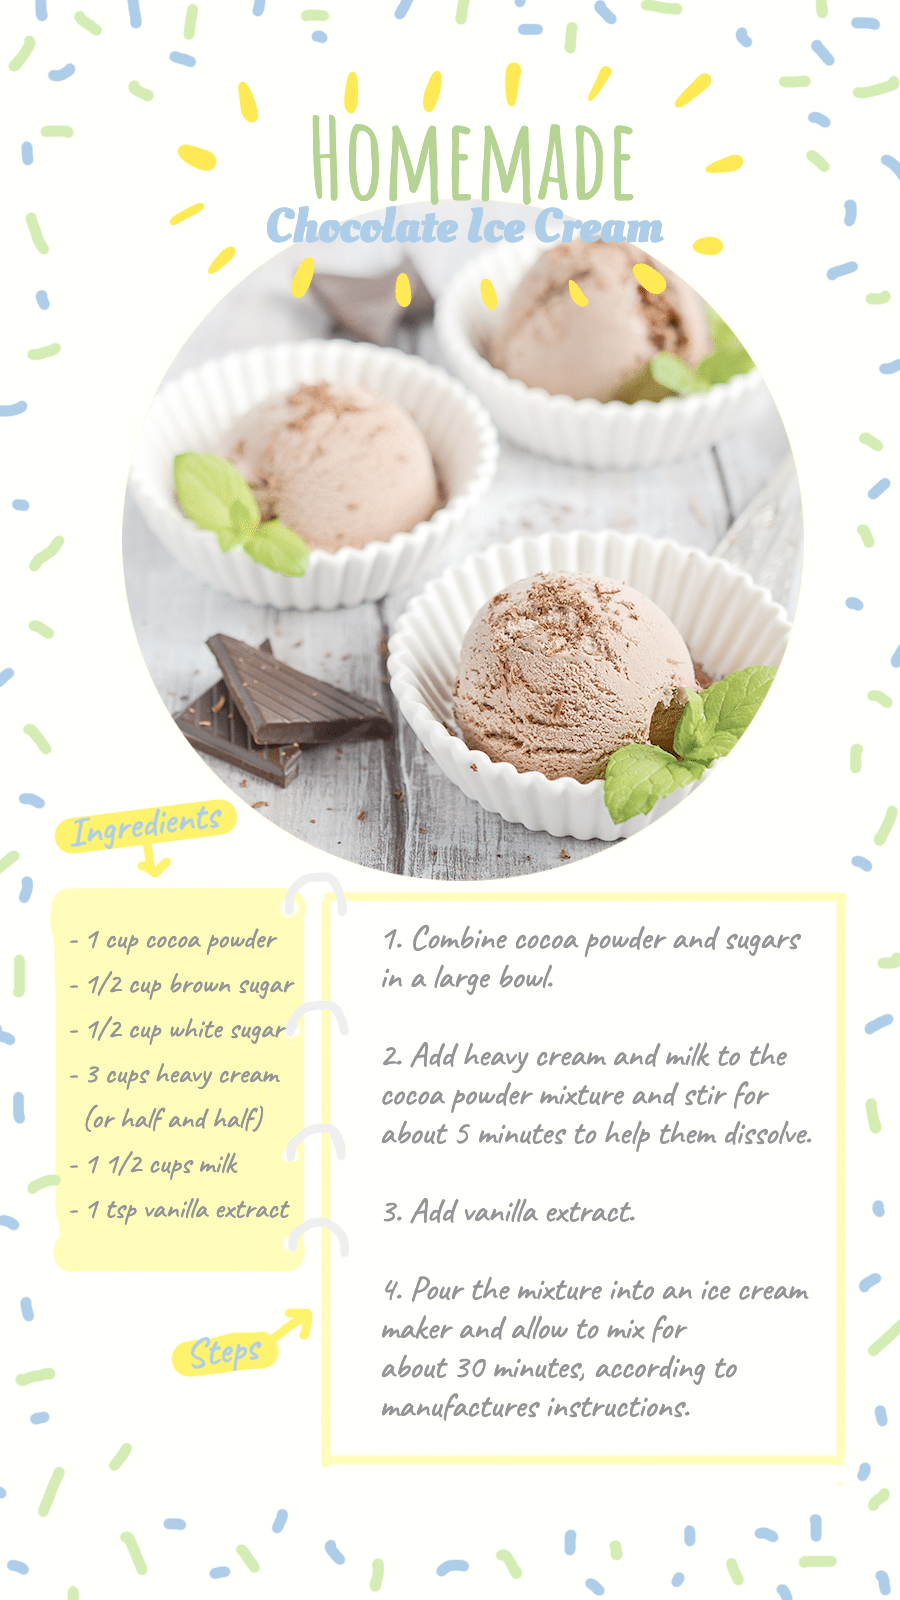 Fresh Homemade Chocolate Ice Cream Menu Display Instagram Story